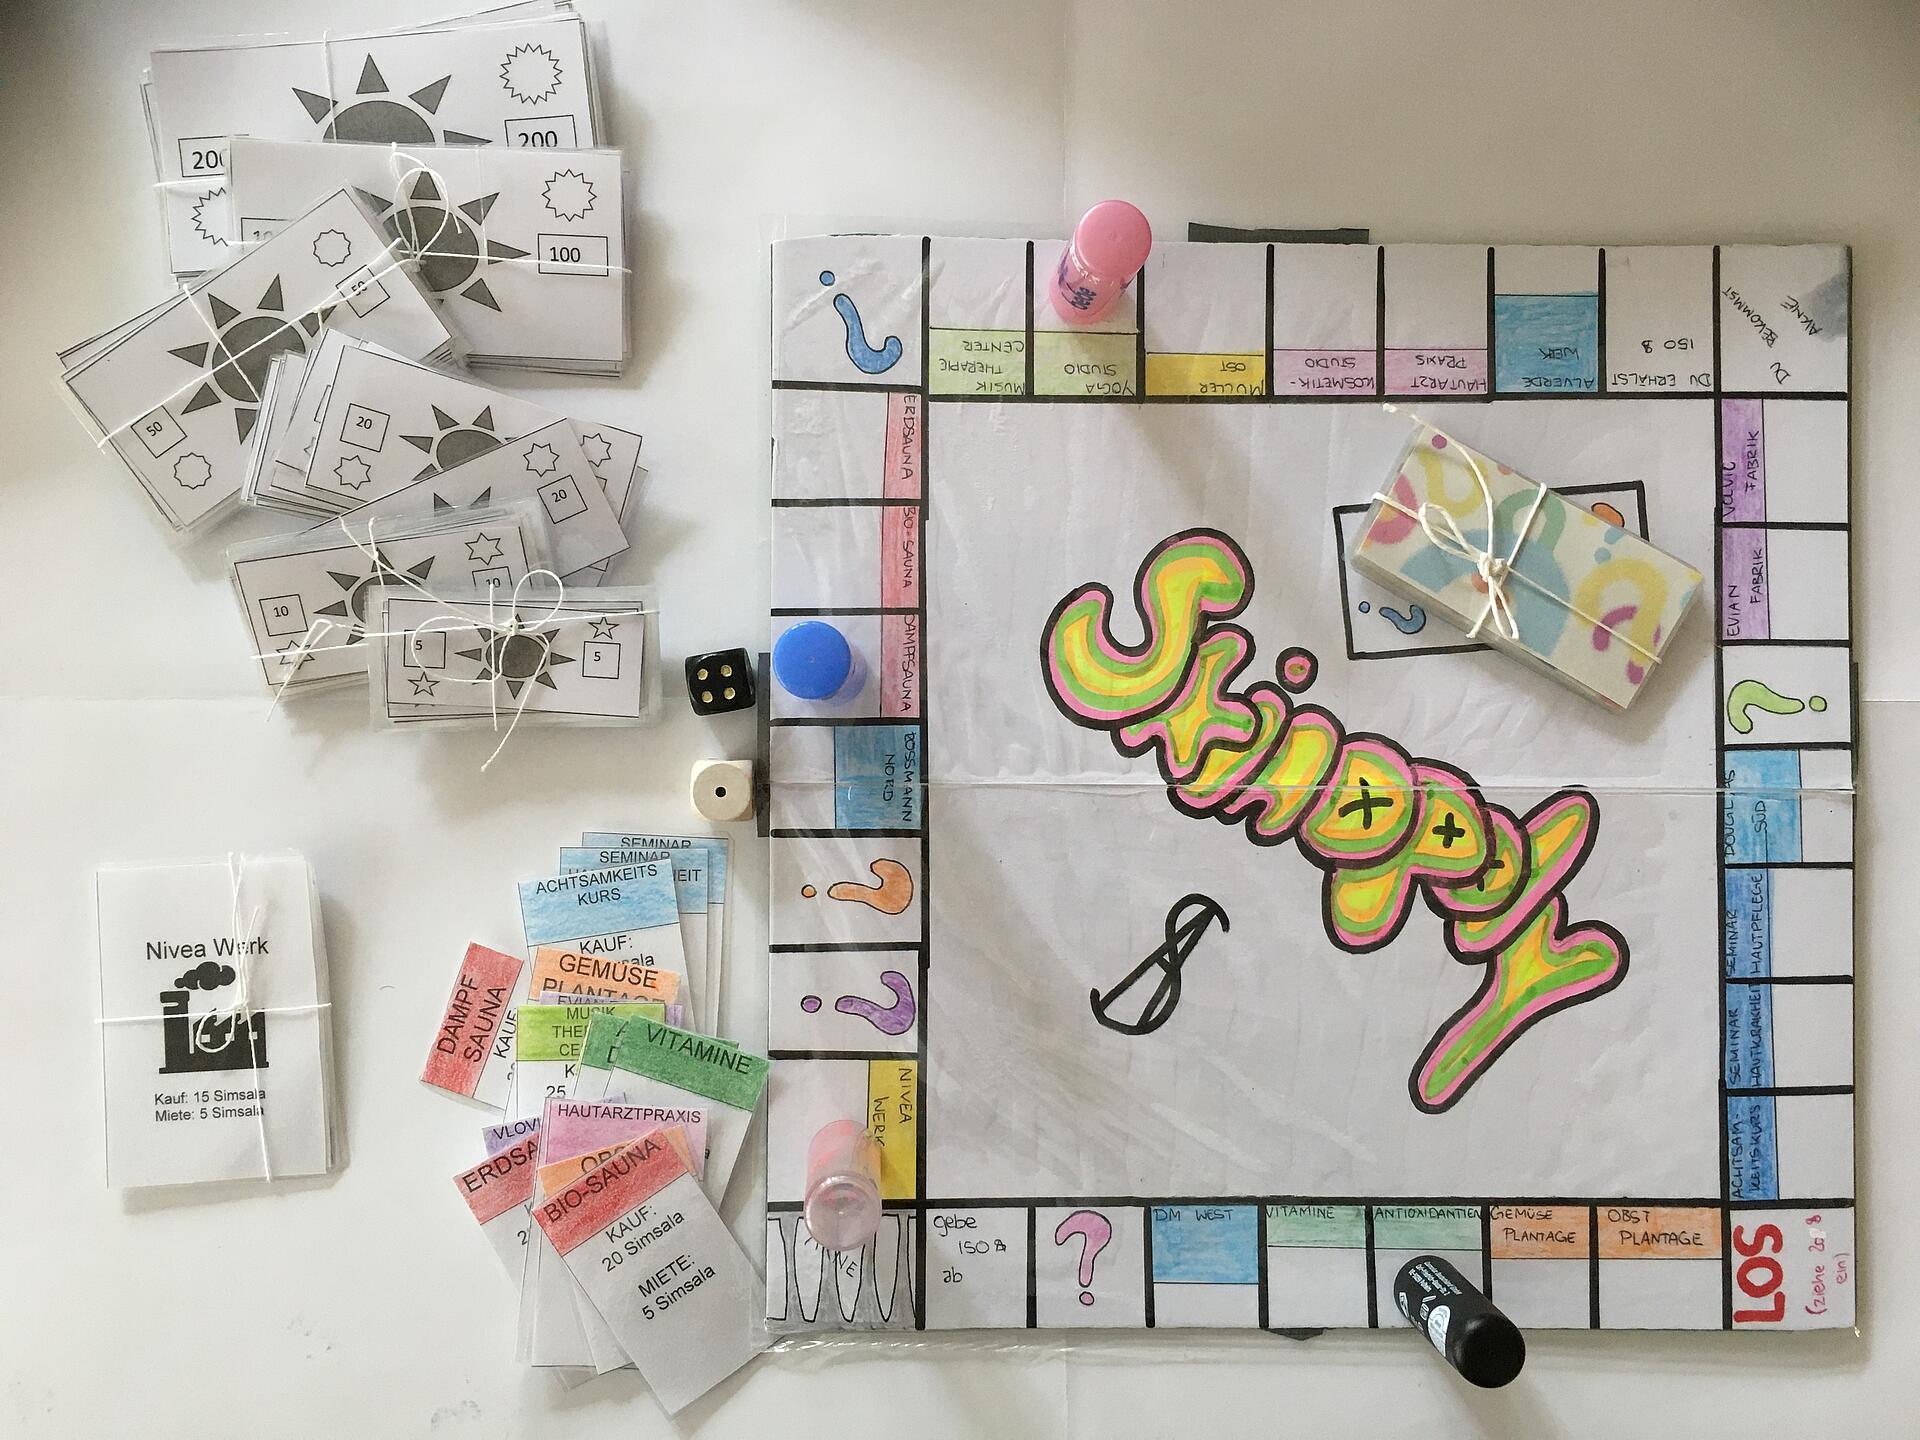 Brettspiel mit dem Namen "Skinopoly". Aufbau und Spielteile ähnlich wie bei Monopoly.